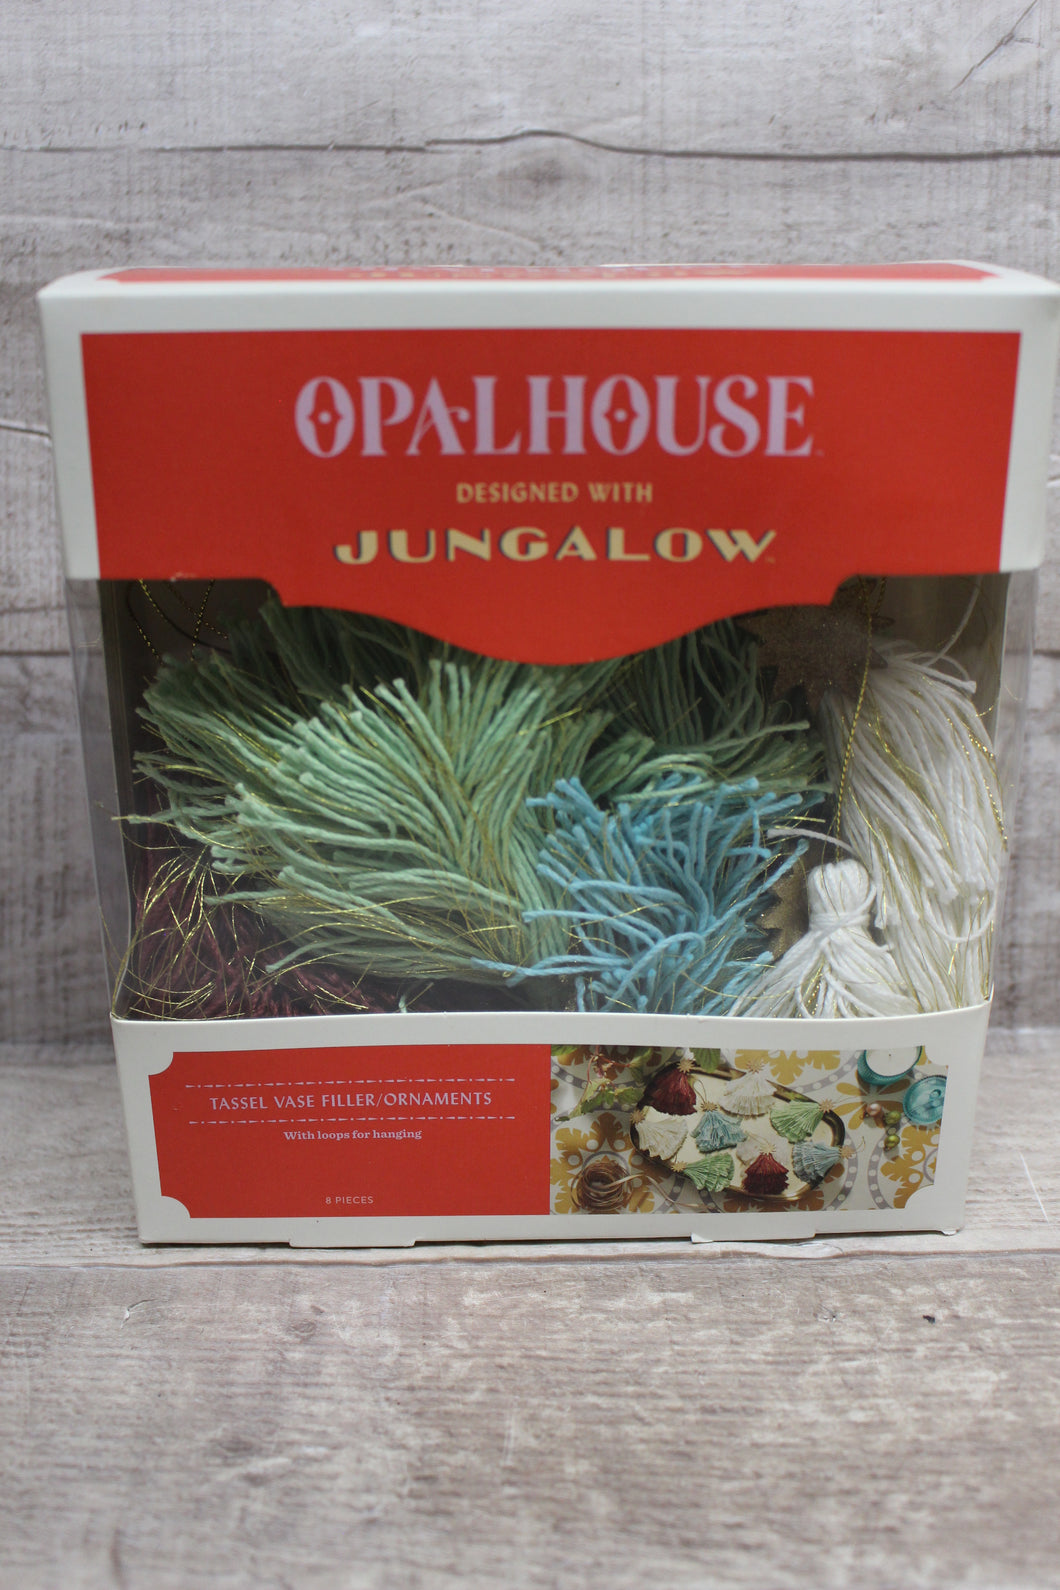 Opalhouse Tassel Vase Filler Ornaments -New